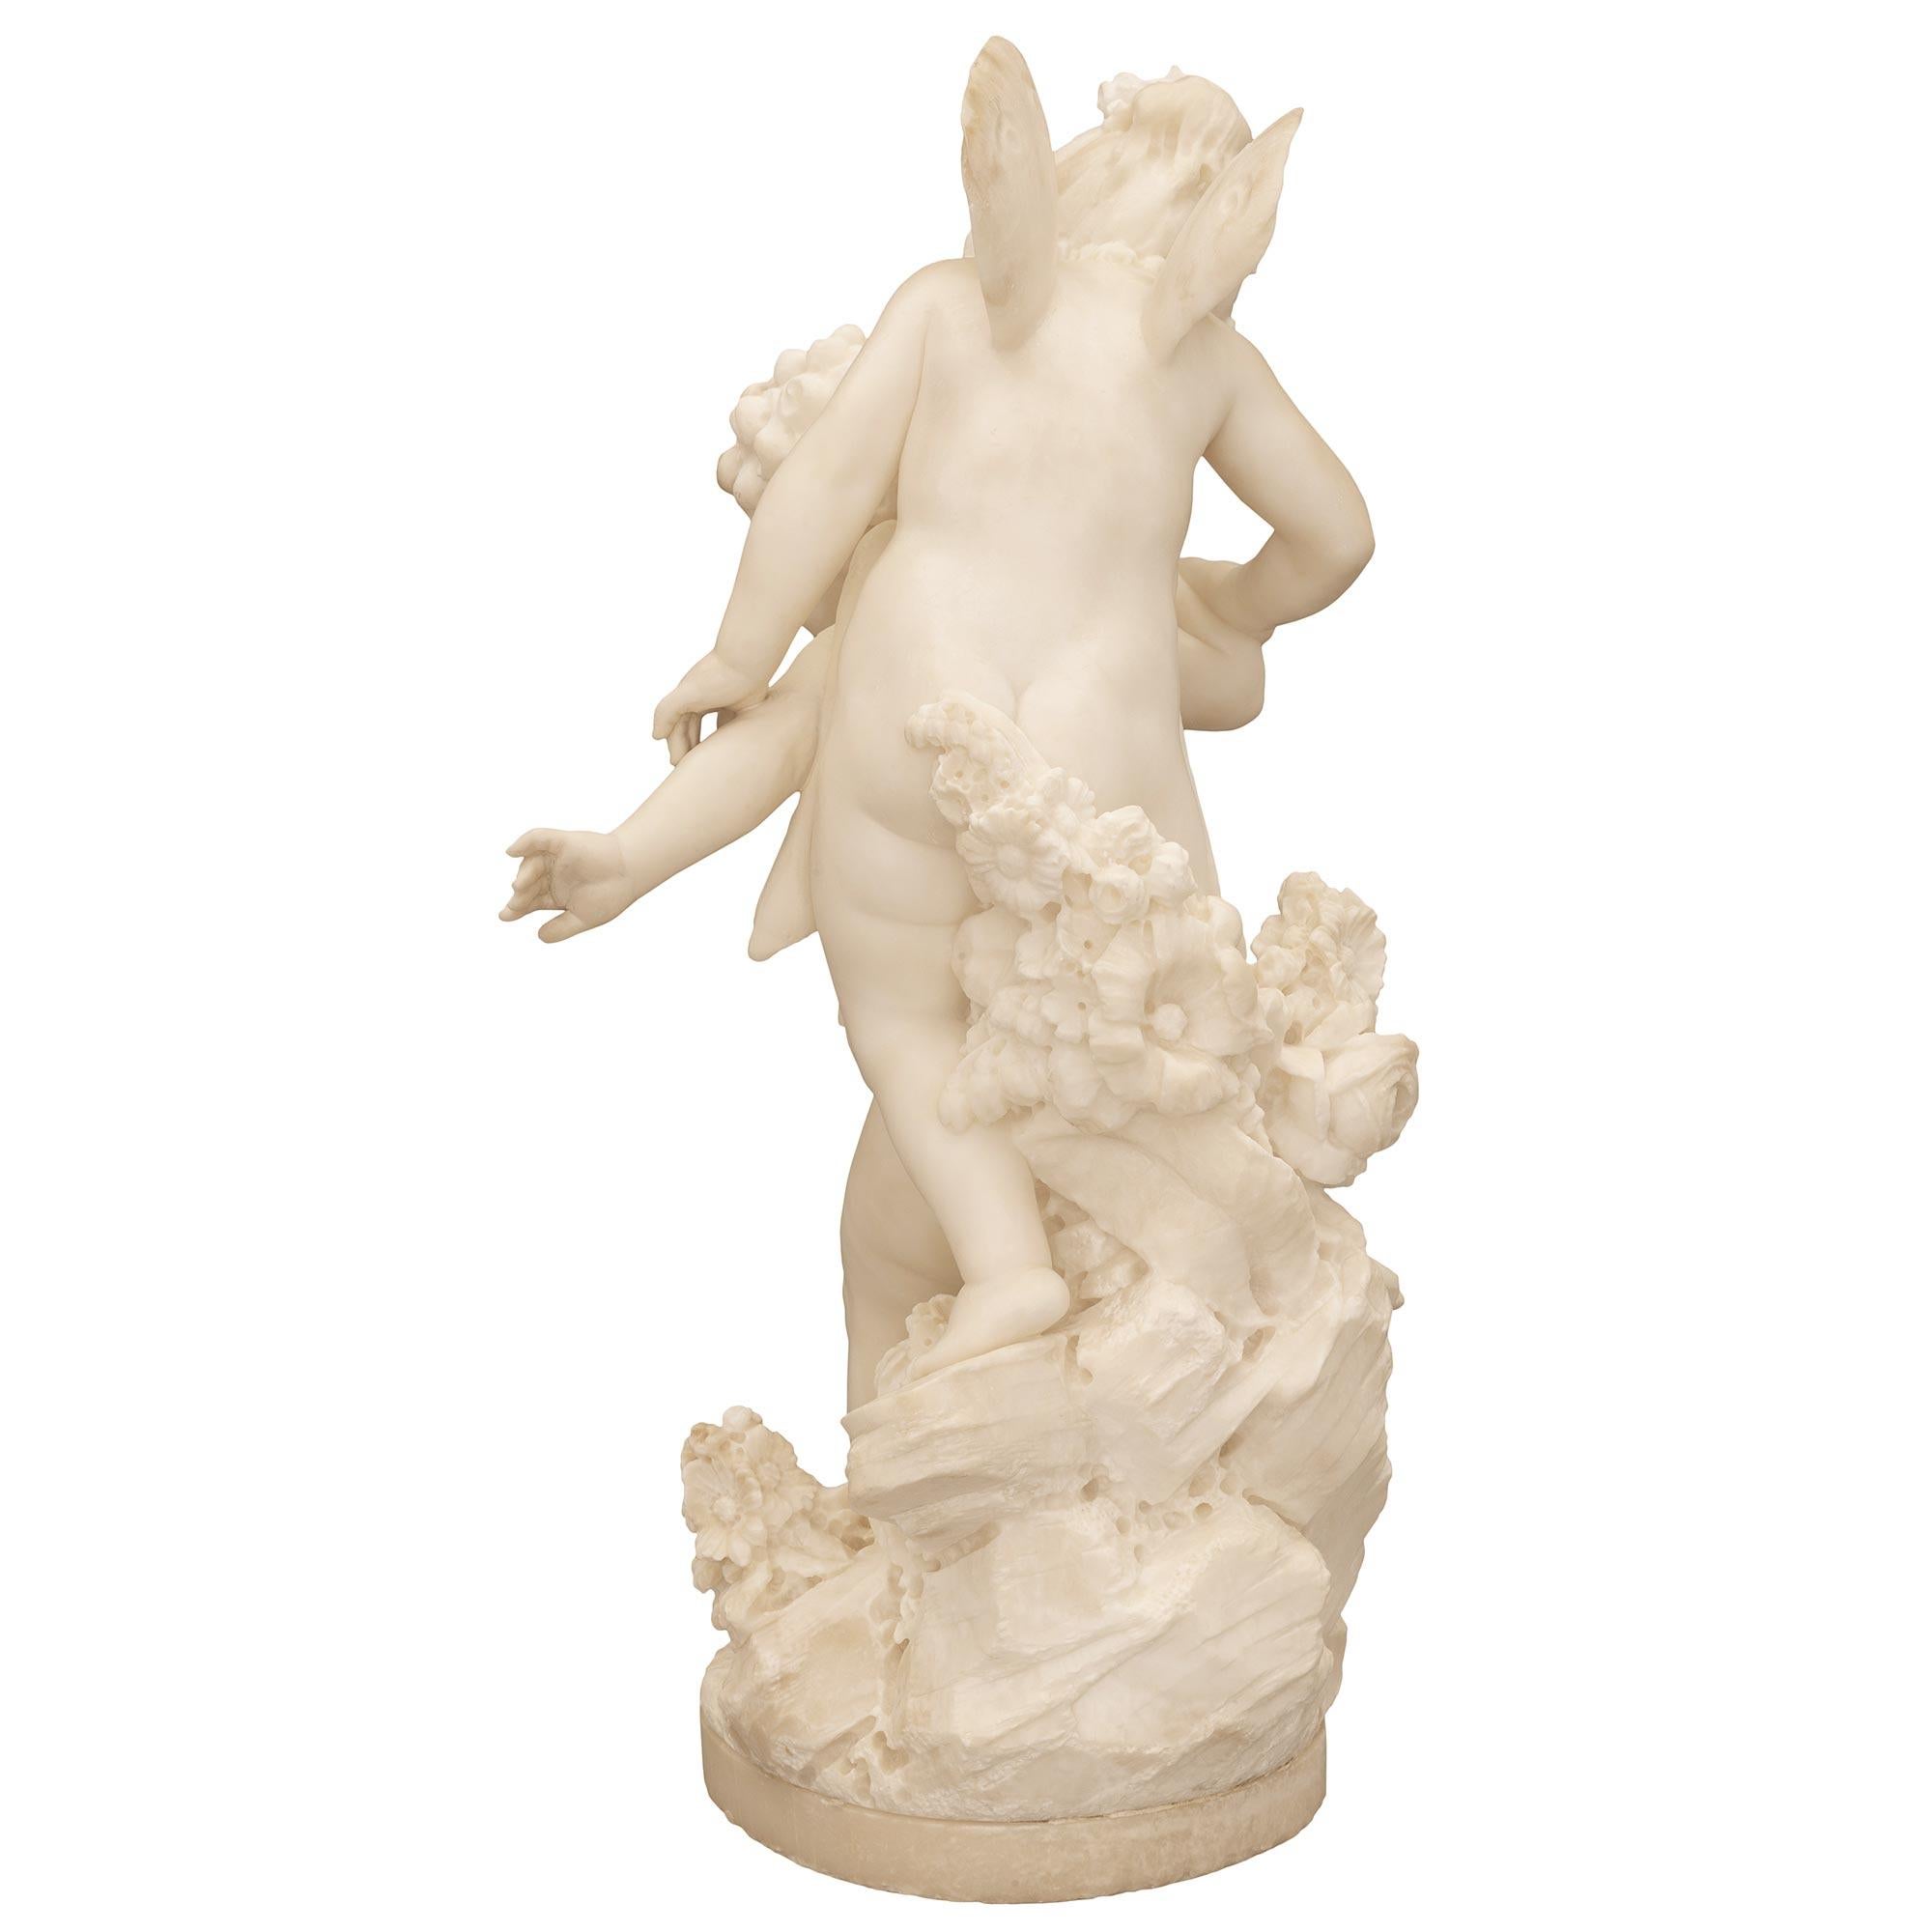 Italian 19th Century White Carrara Marble Statue Titled “Amore Sdegnato” For Sale 2